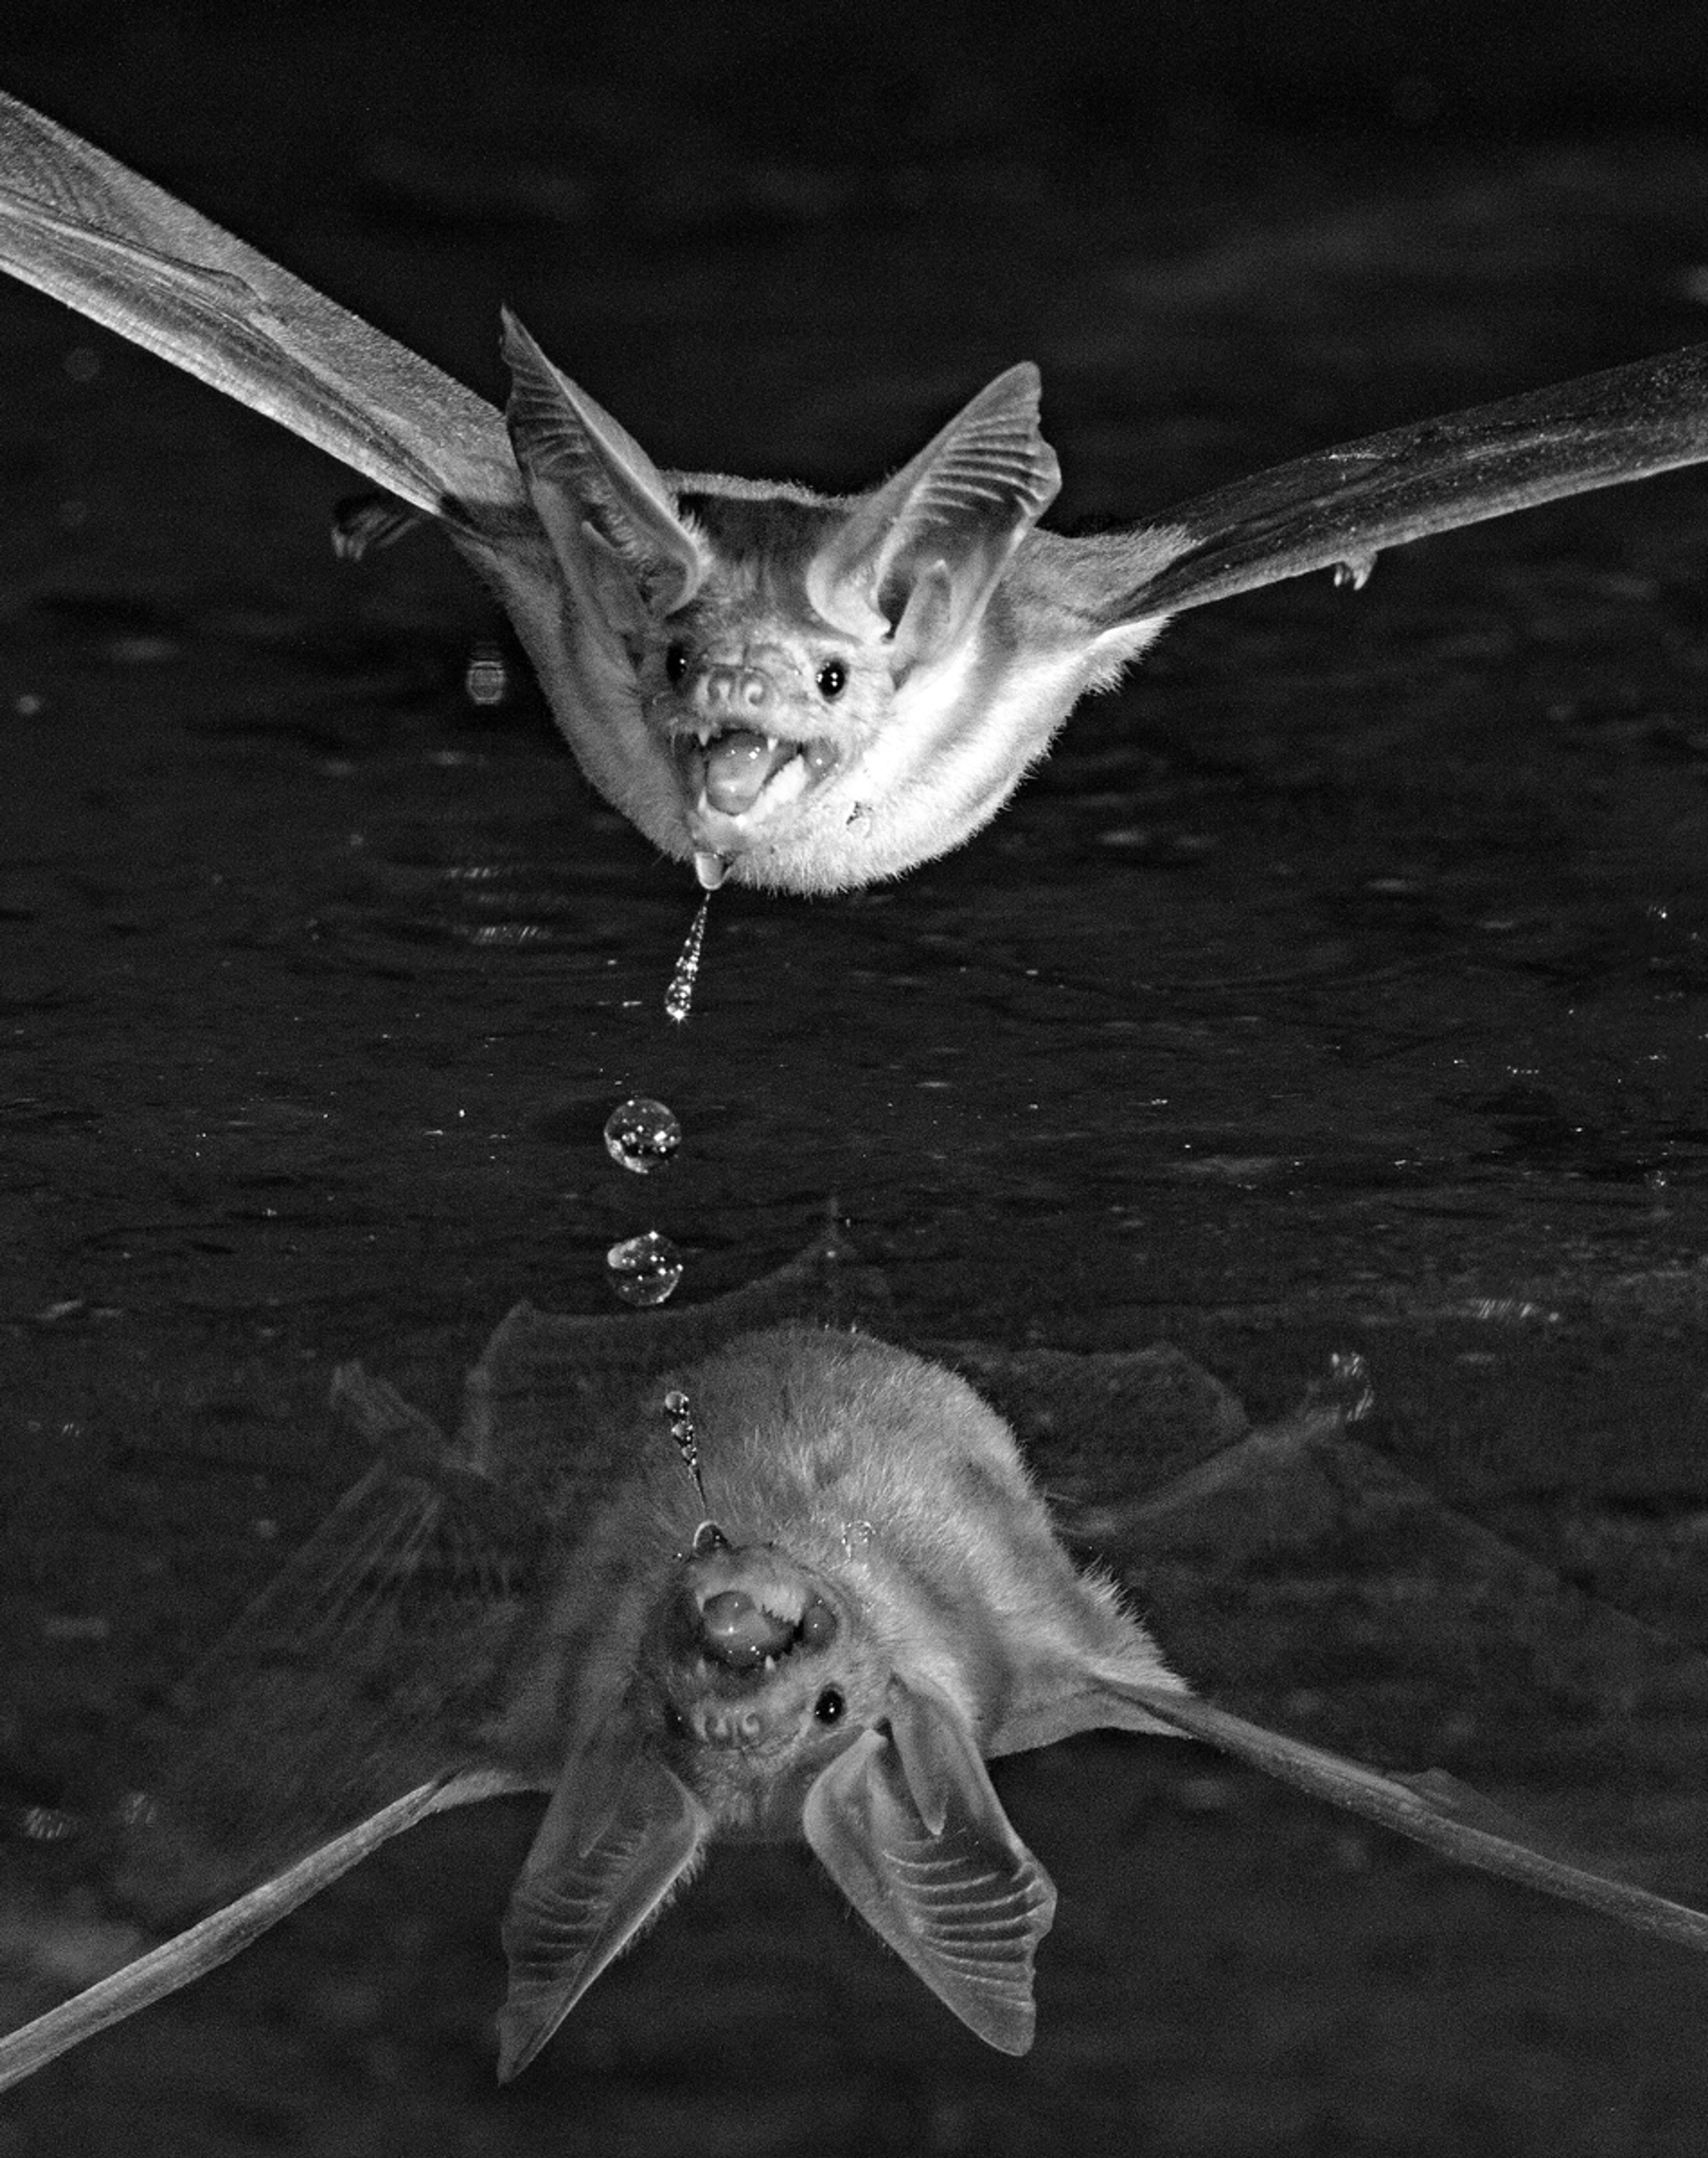 Bat Drinking And Dribbling At Night In Arizona by John Barker